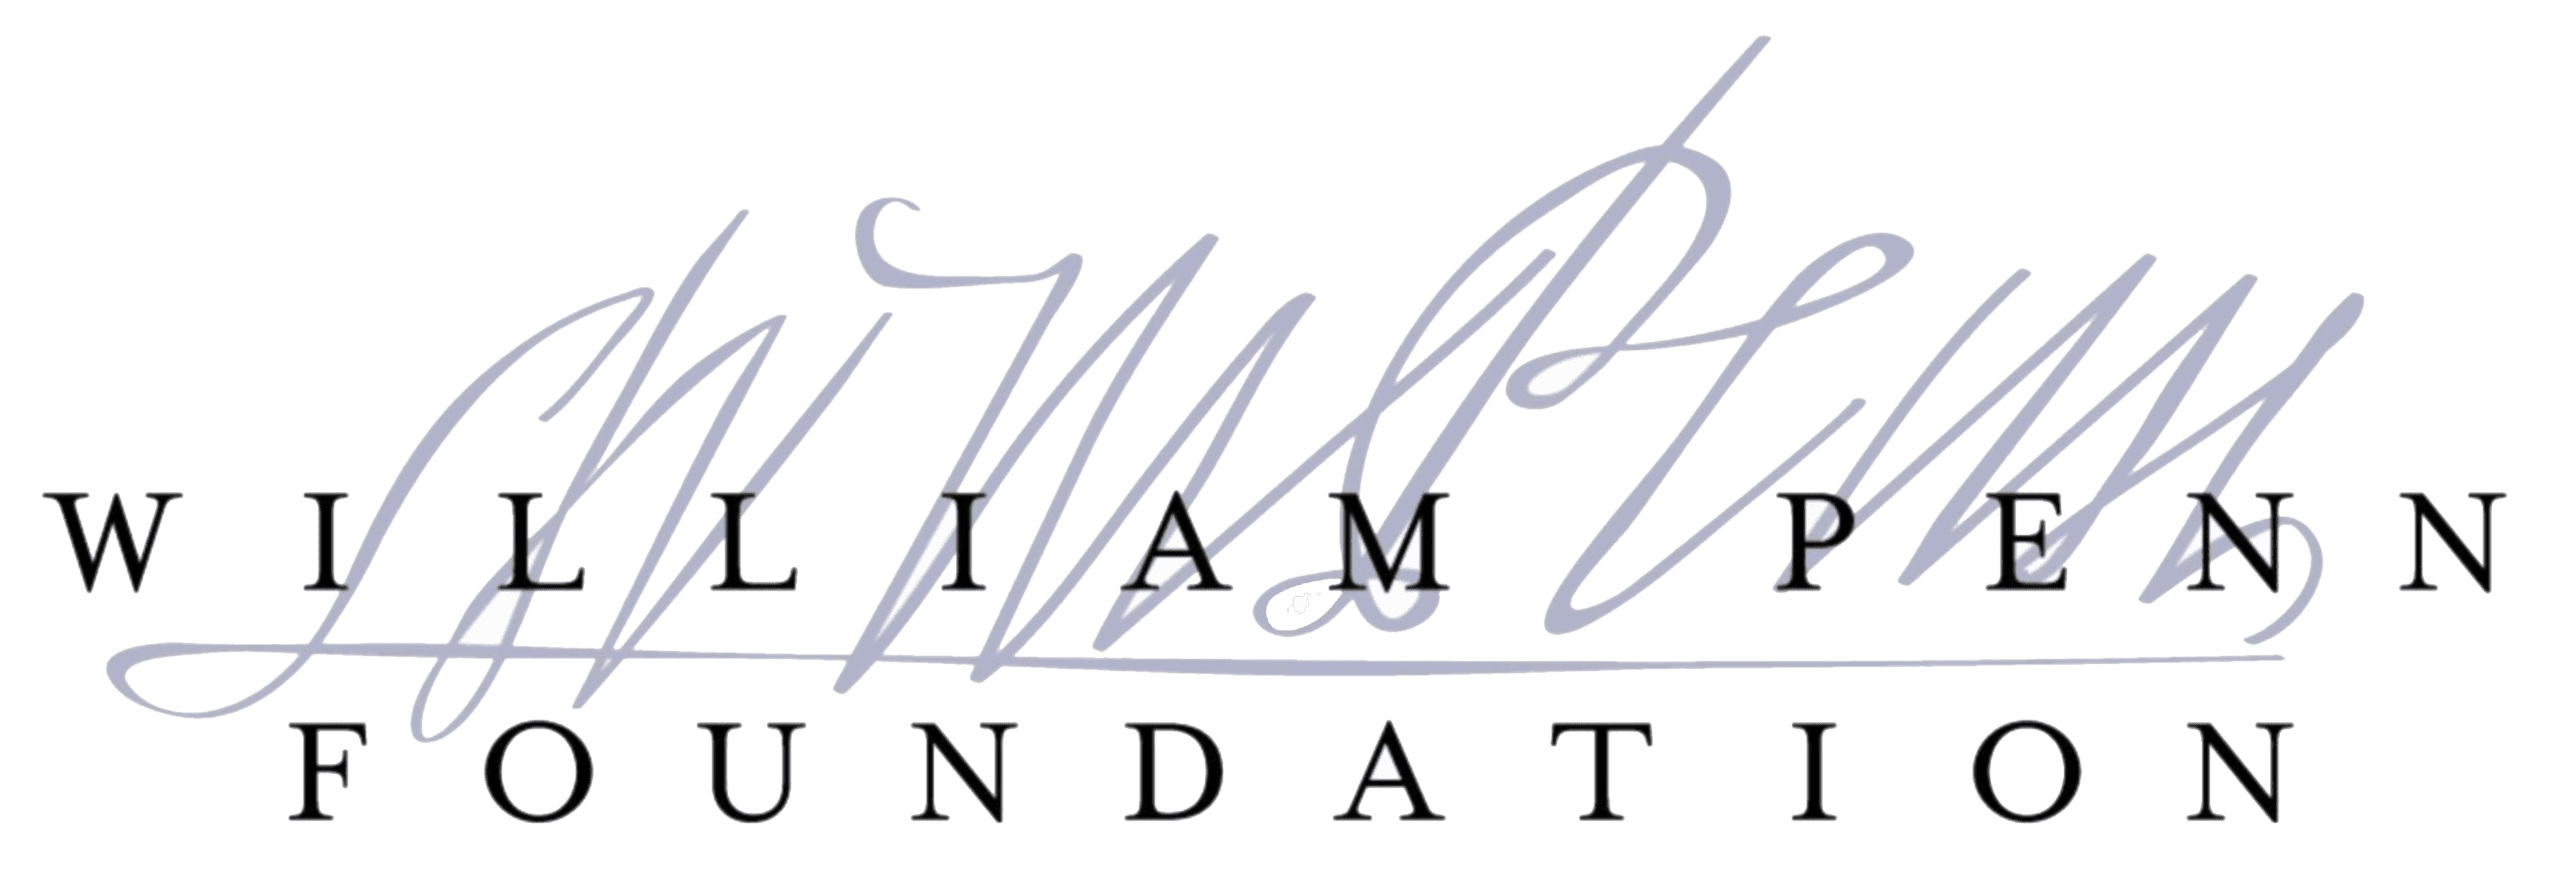 William Penn Foundation Logo